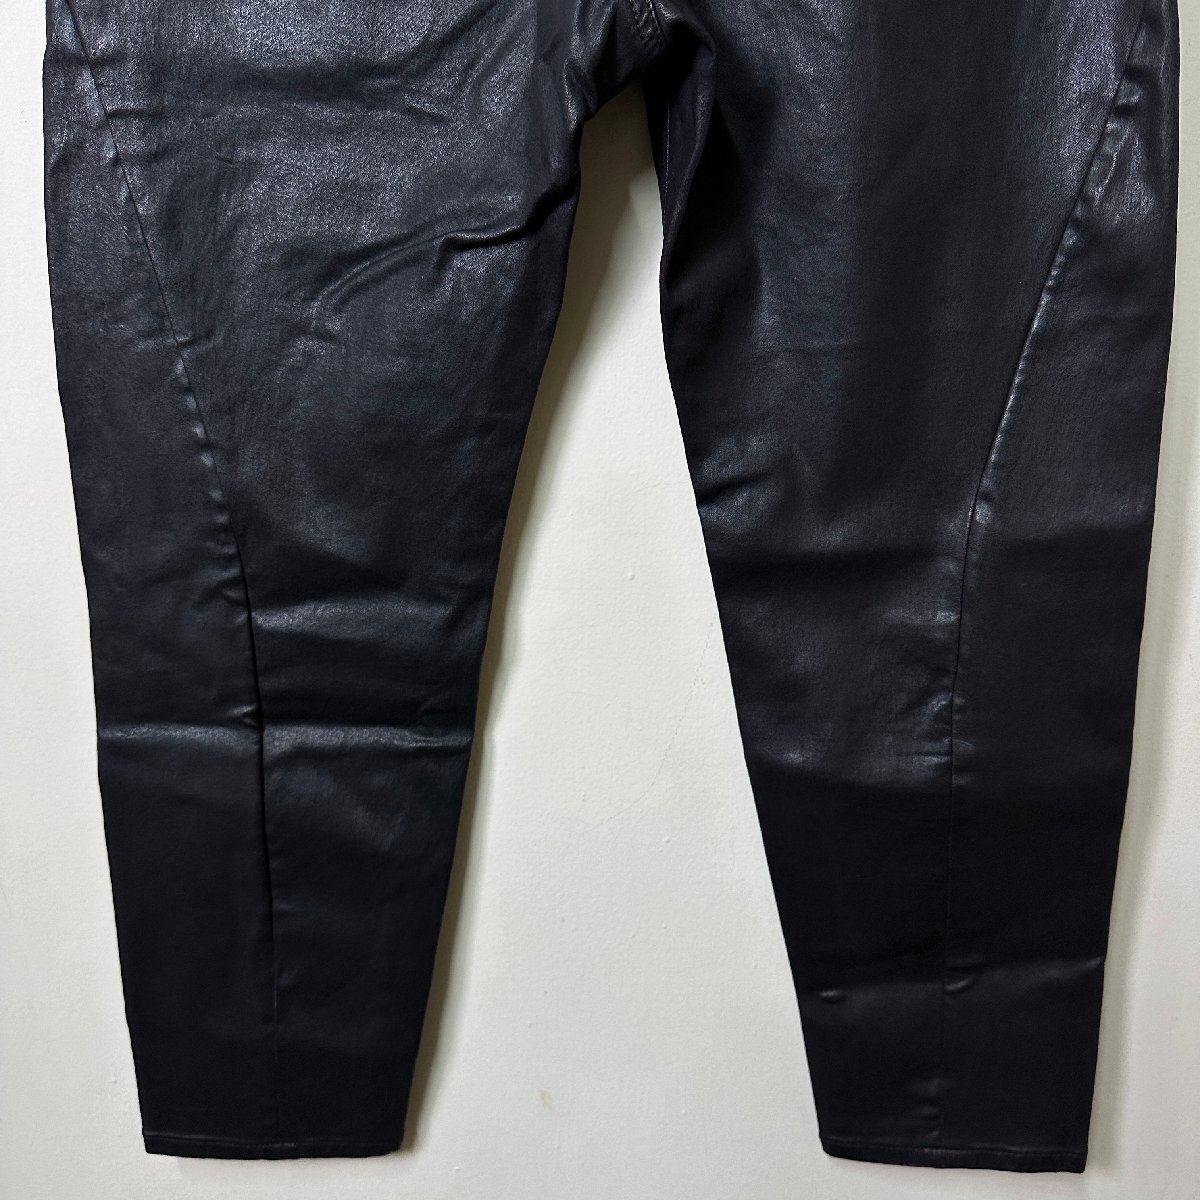  regular goods / new goods / unused /W27# outlet # regular price 41,800 jpy #DIESEL diesel lady's Jog jeans The Boy Friend color Denim N477